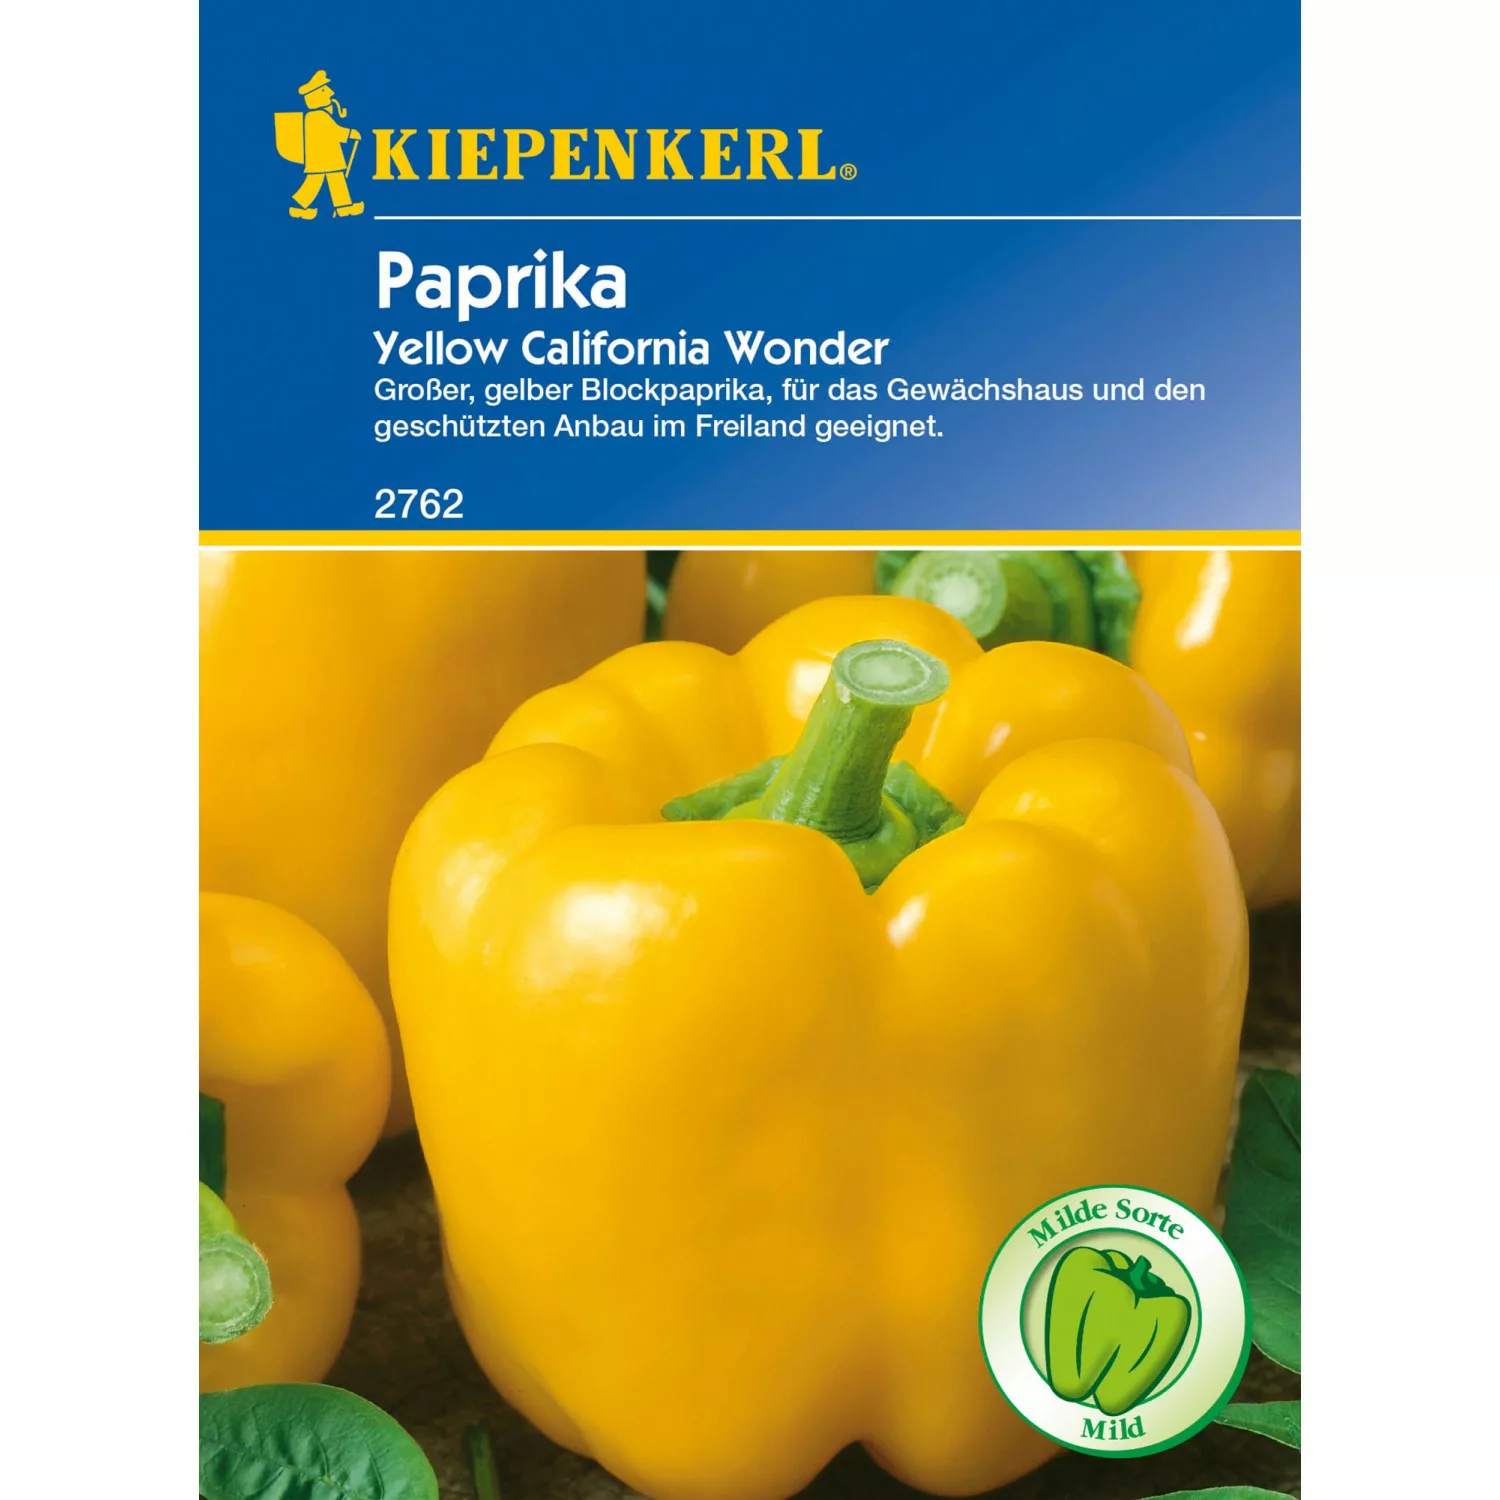 Kiepenkerl Paprika Yellow Carlifornia Wonder günstig online kaufen